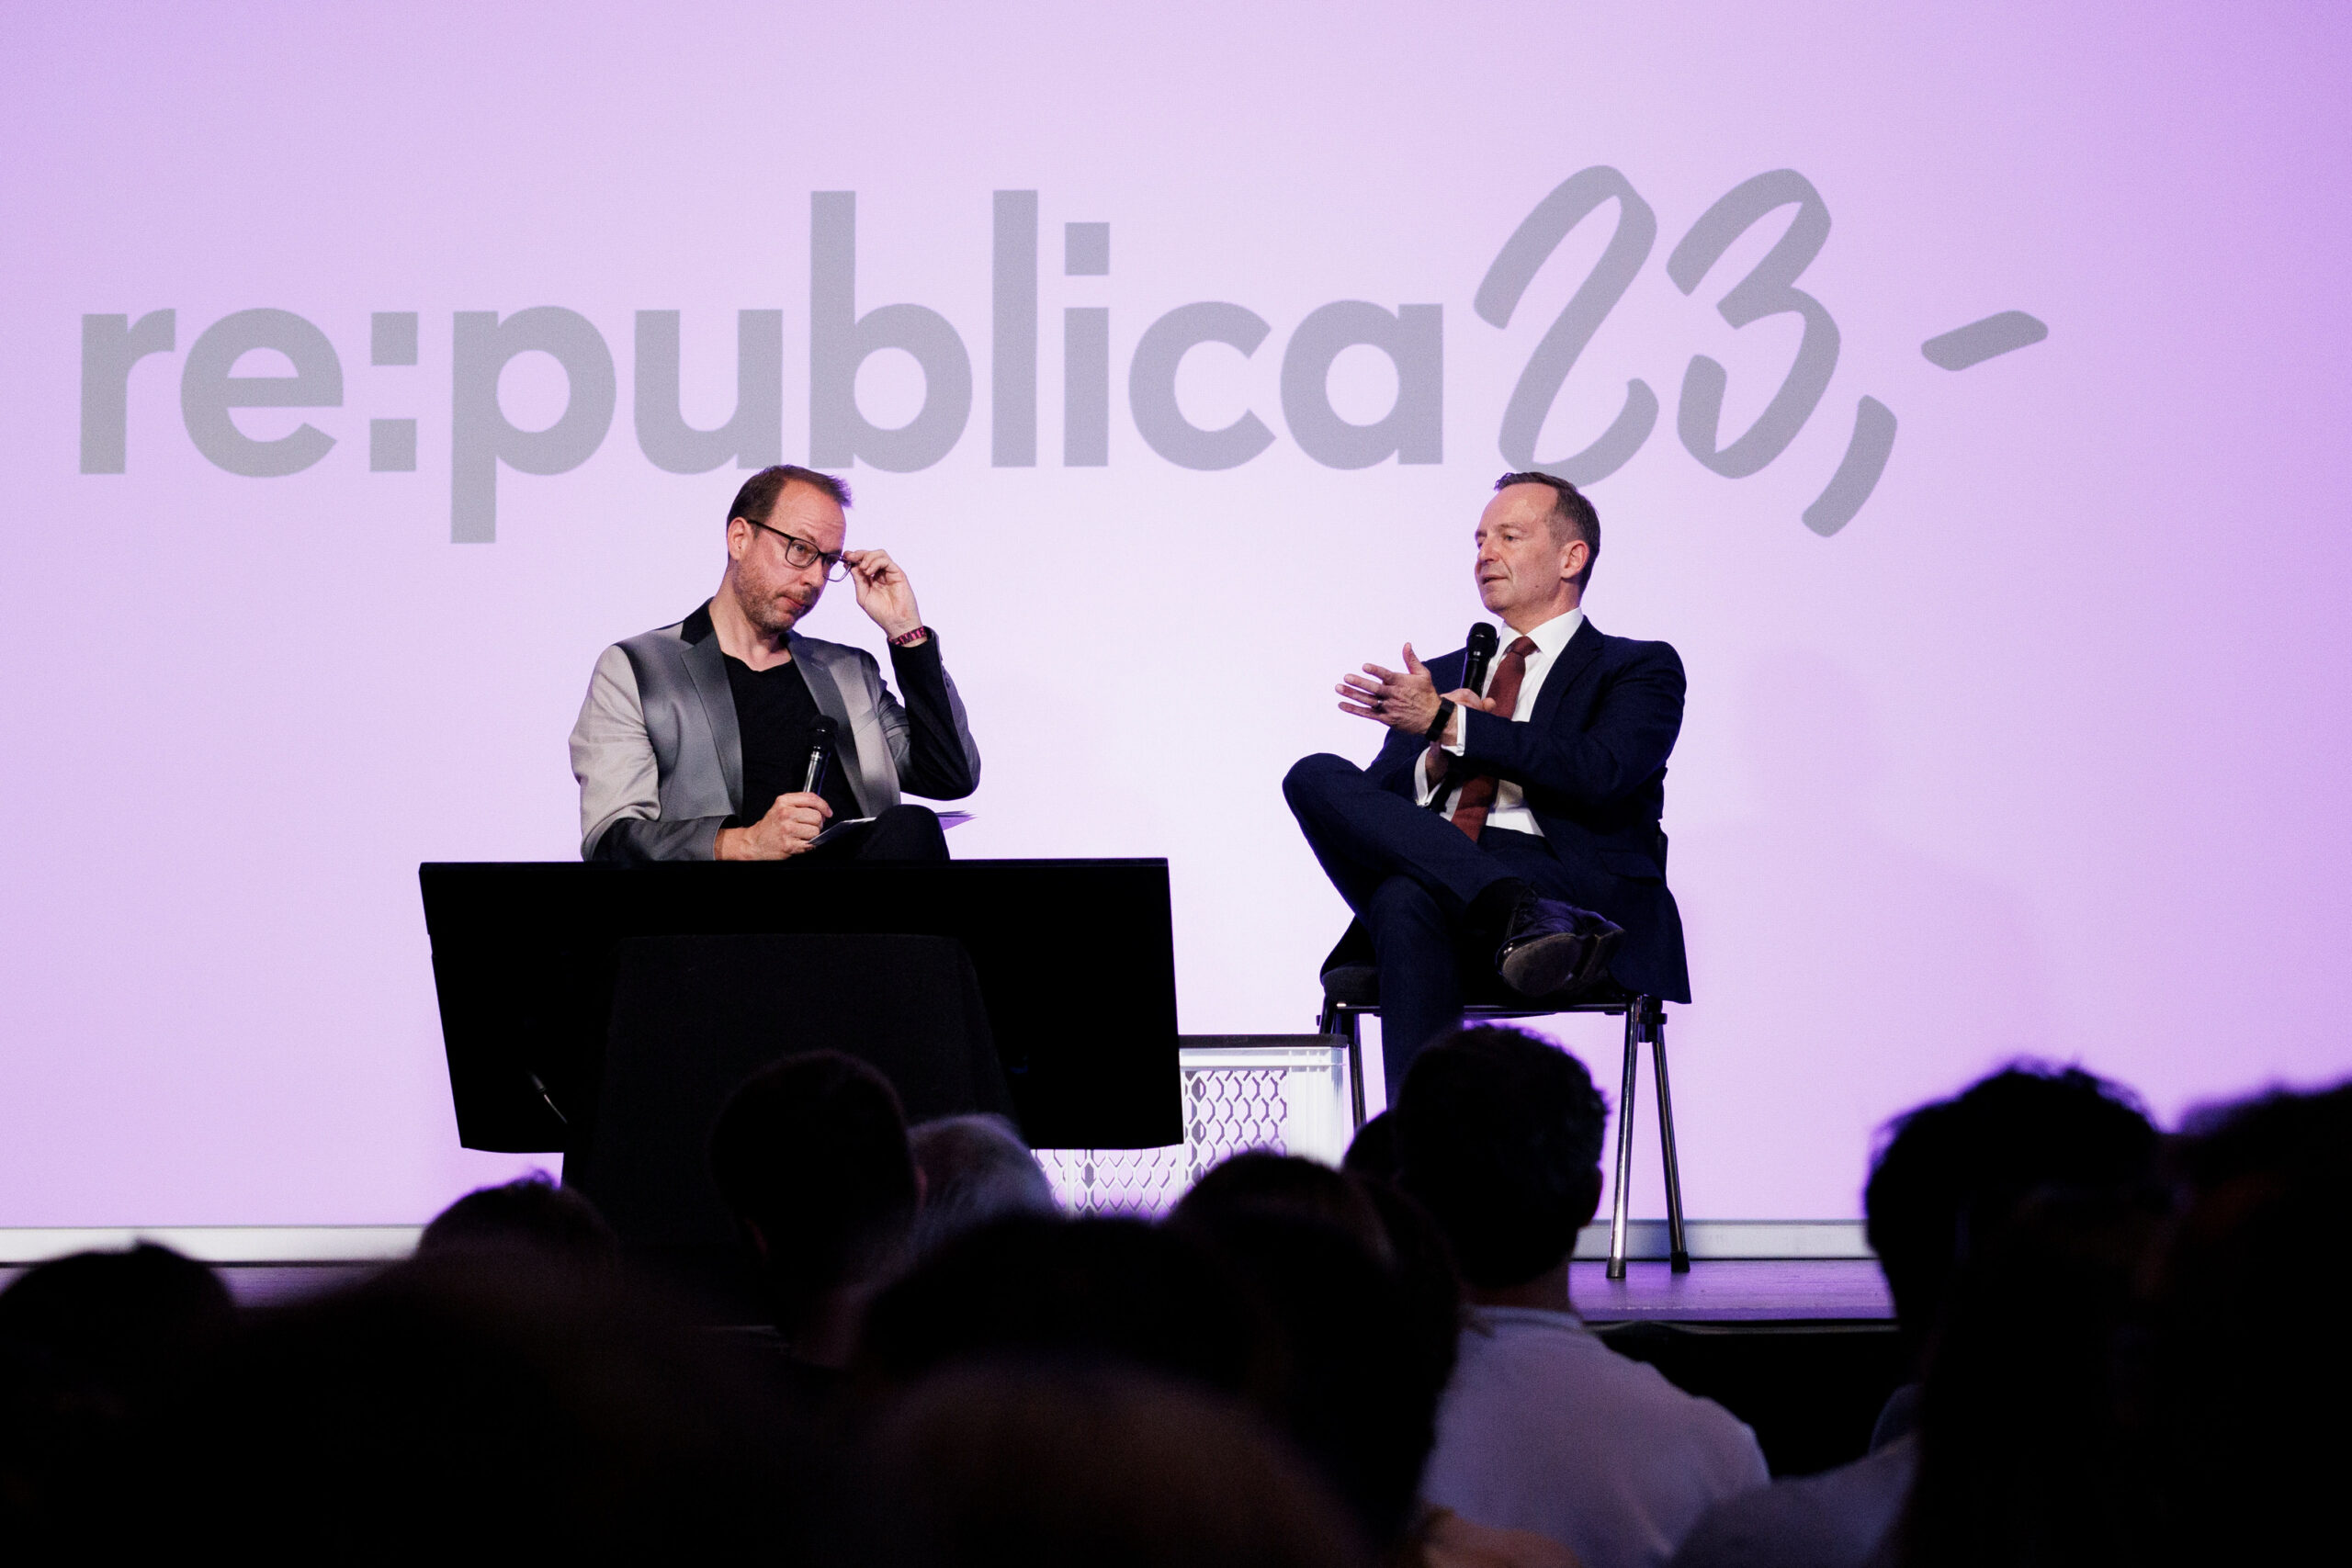 Volker Wissing (r, FDP), Bundesminister für Verkehr und Digitales, spricht auf der Bühne bei einer Veranstaltung während der Digital-Konferenz «Republica».